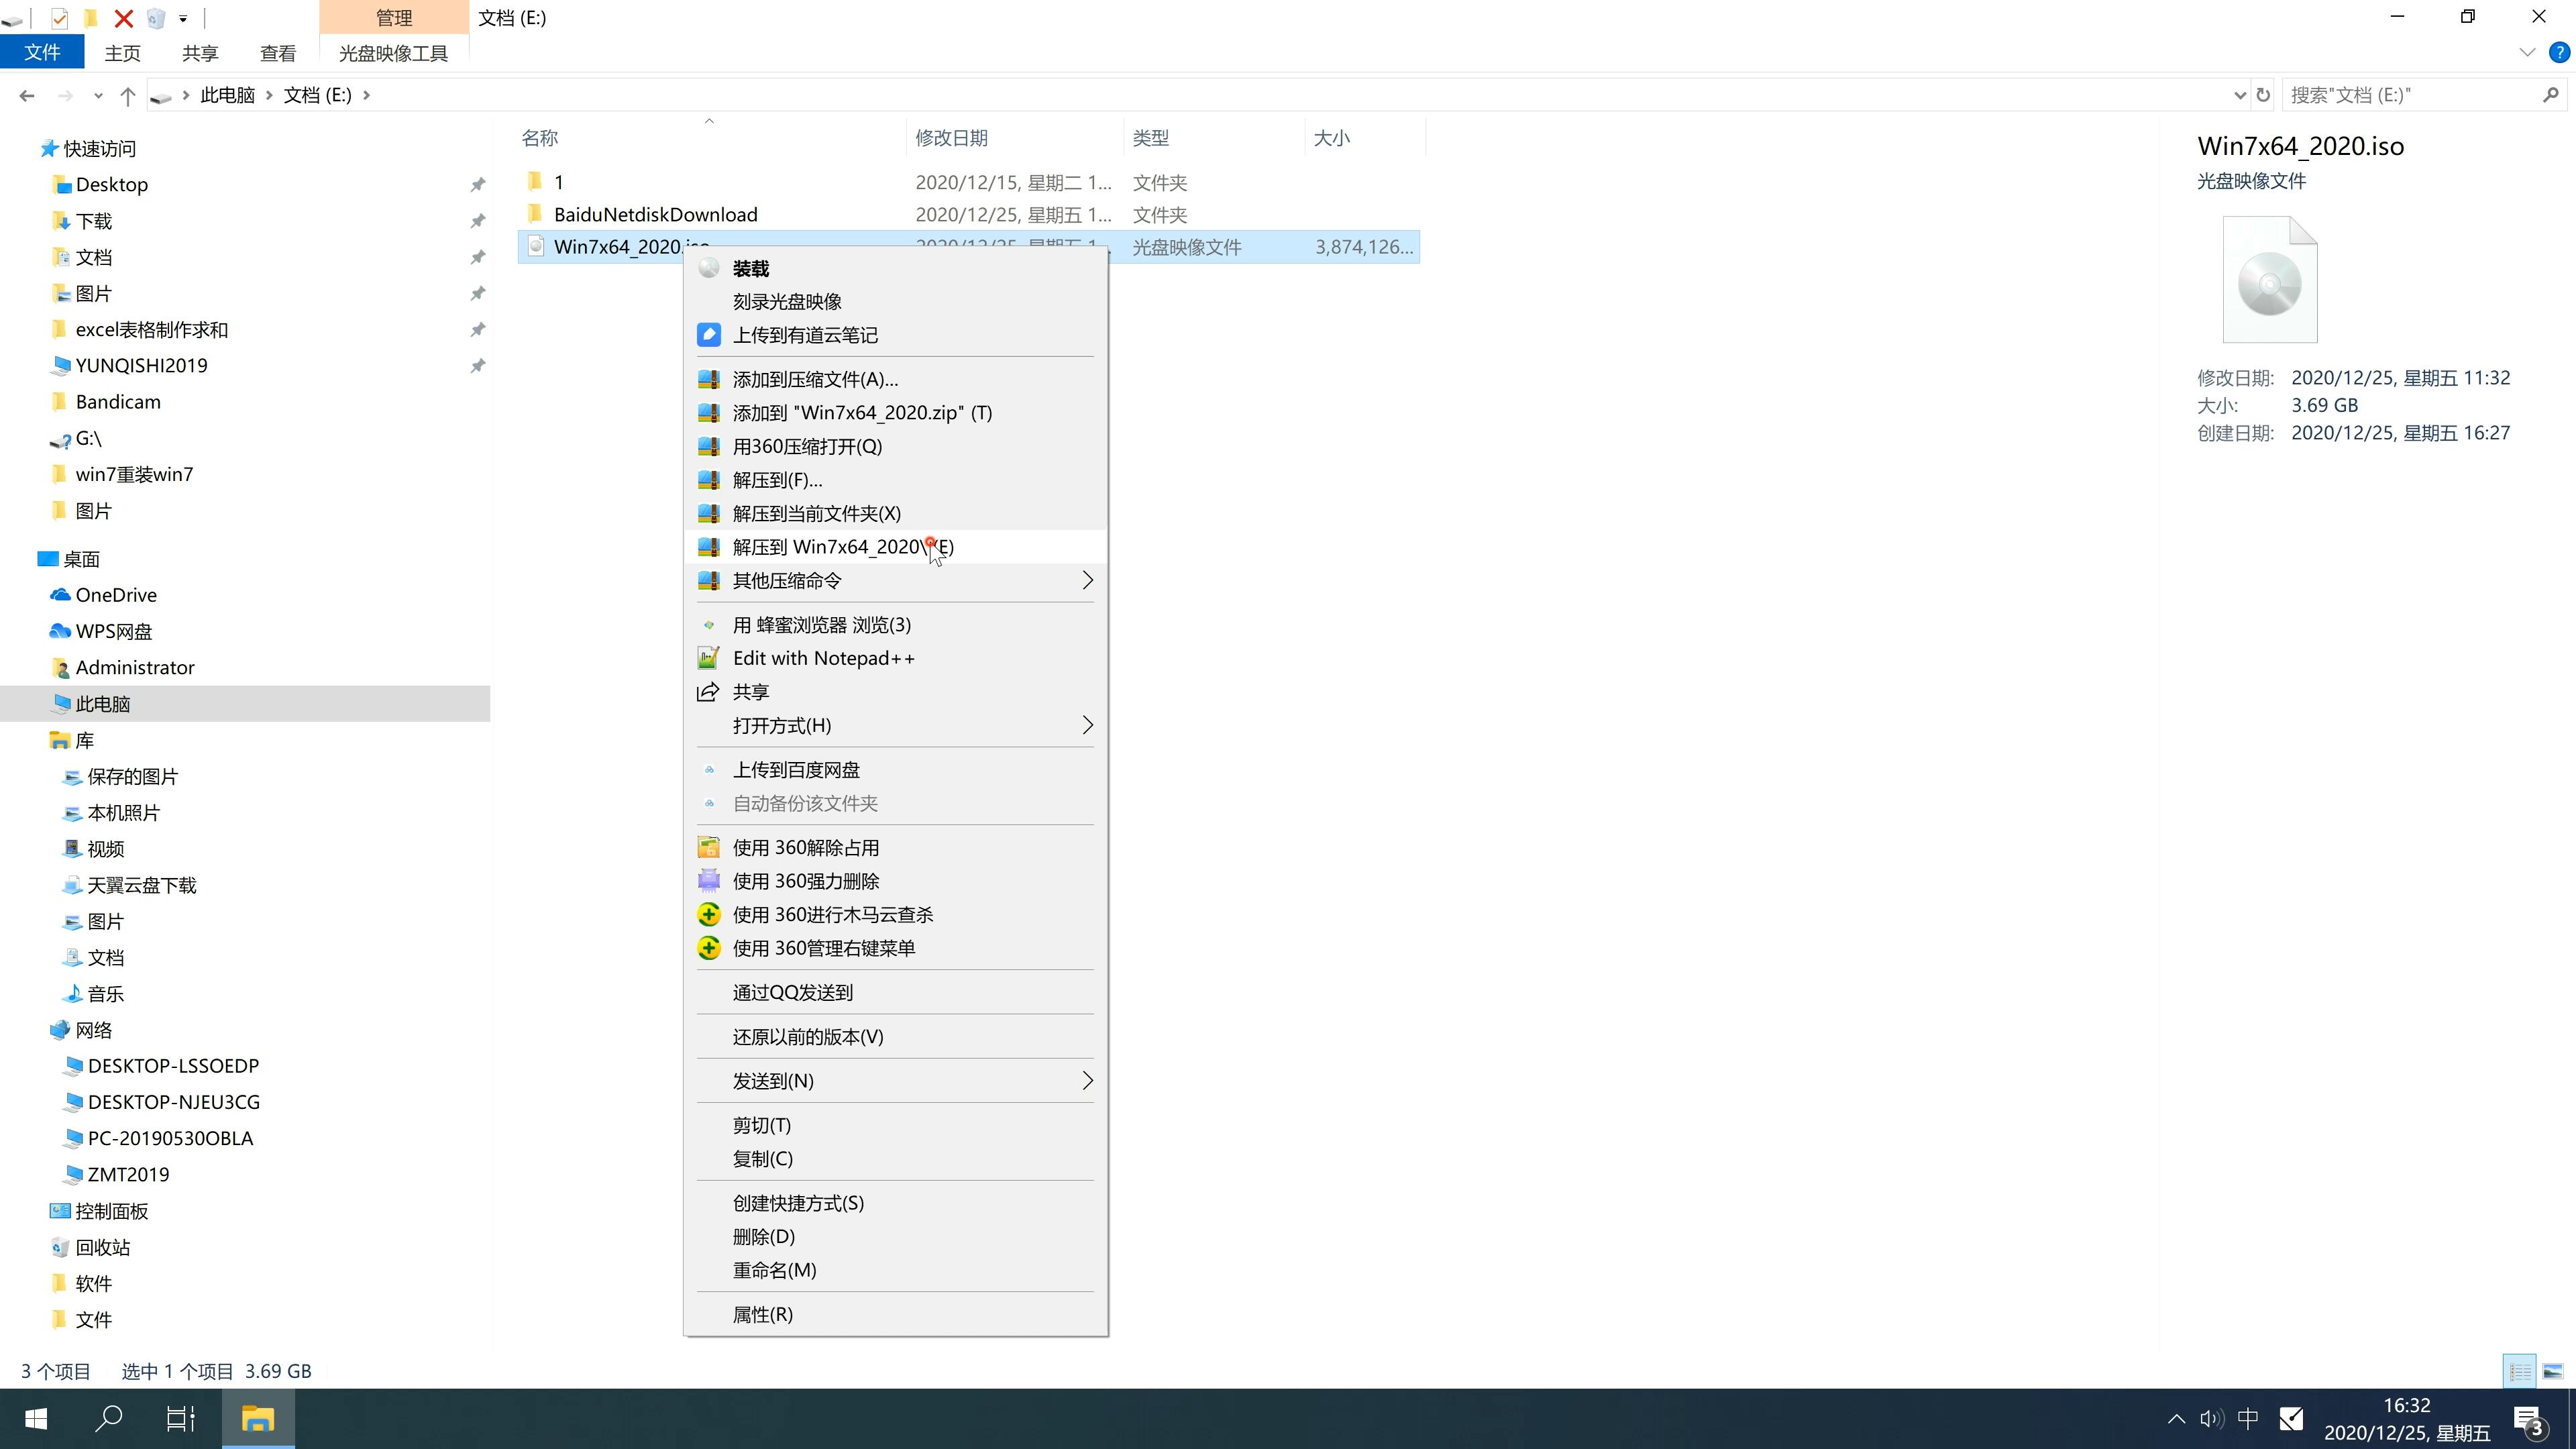 新版戴尔笔记本专用系统 Ghost WINDOWS7 x64位  旗舰版系统 V2021.04(2)